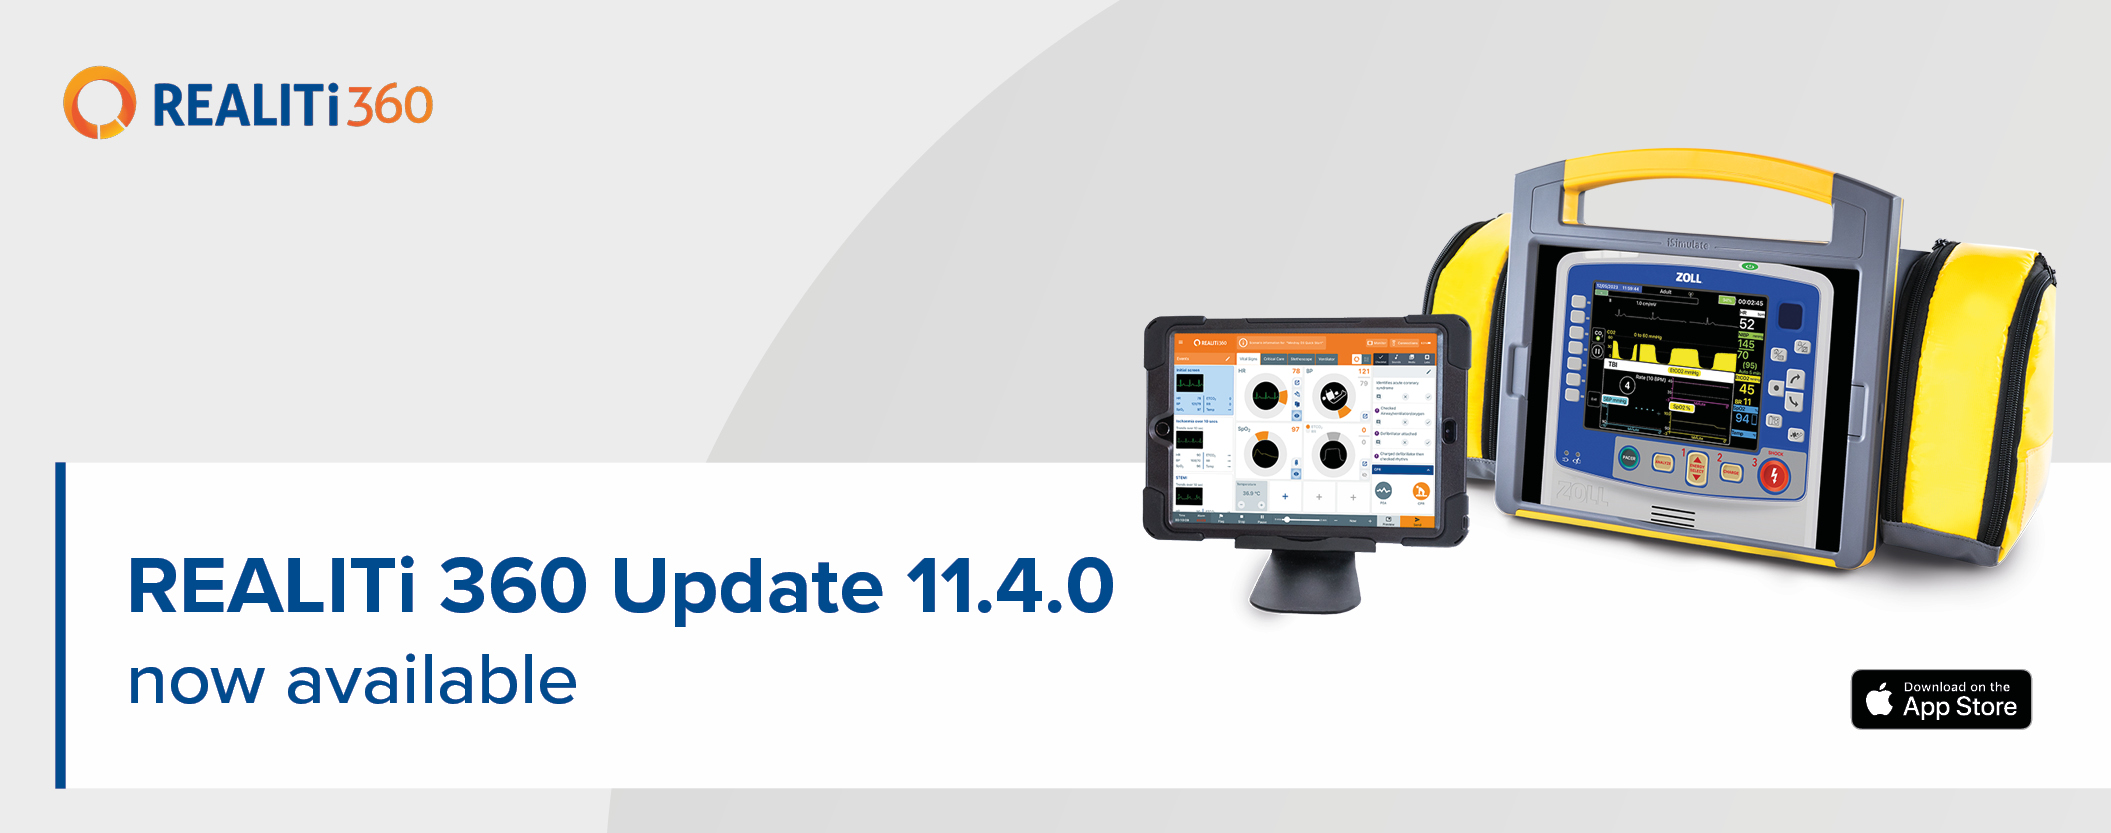 Explore the latest REALITi version 11.4.0!